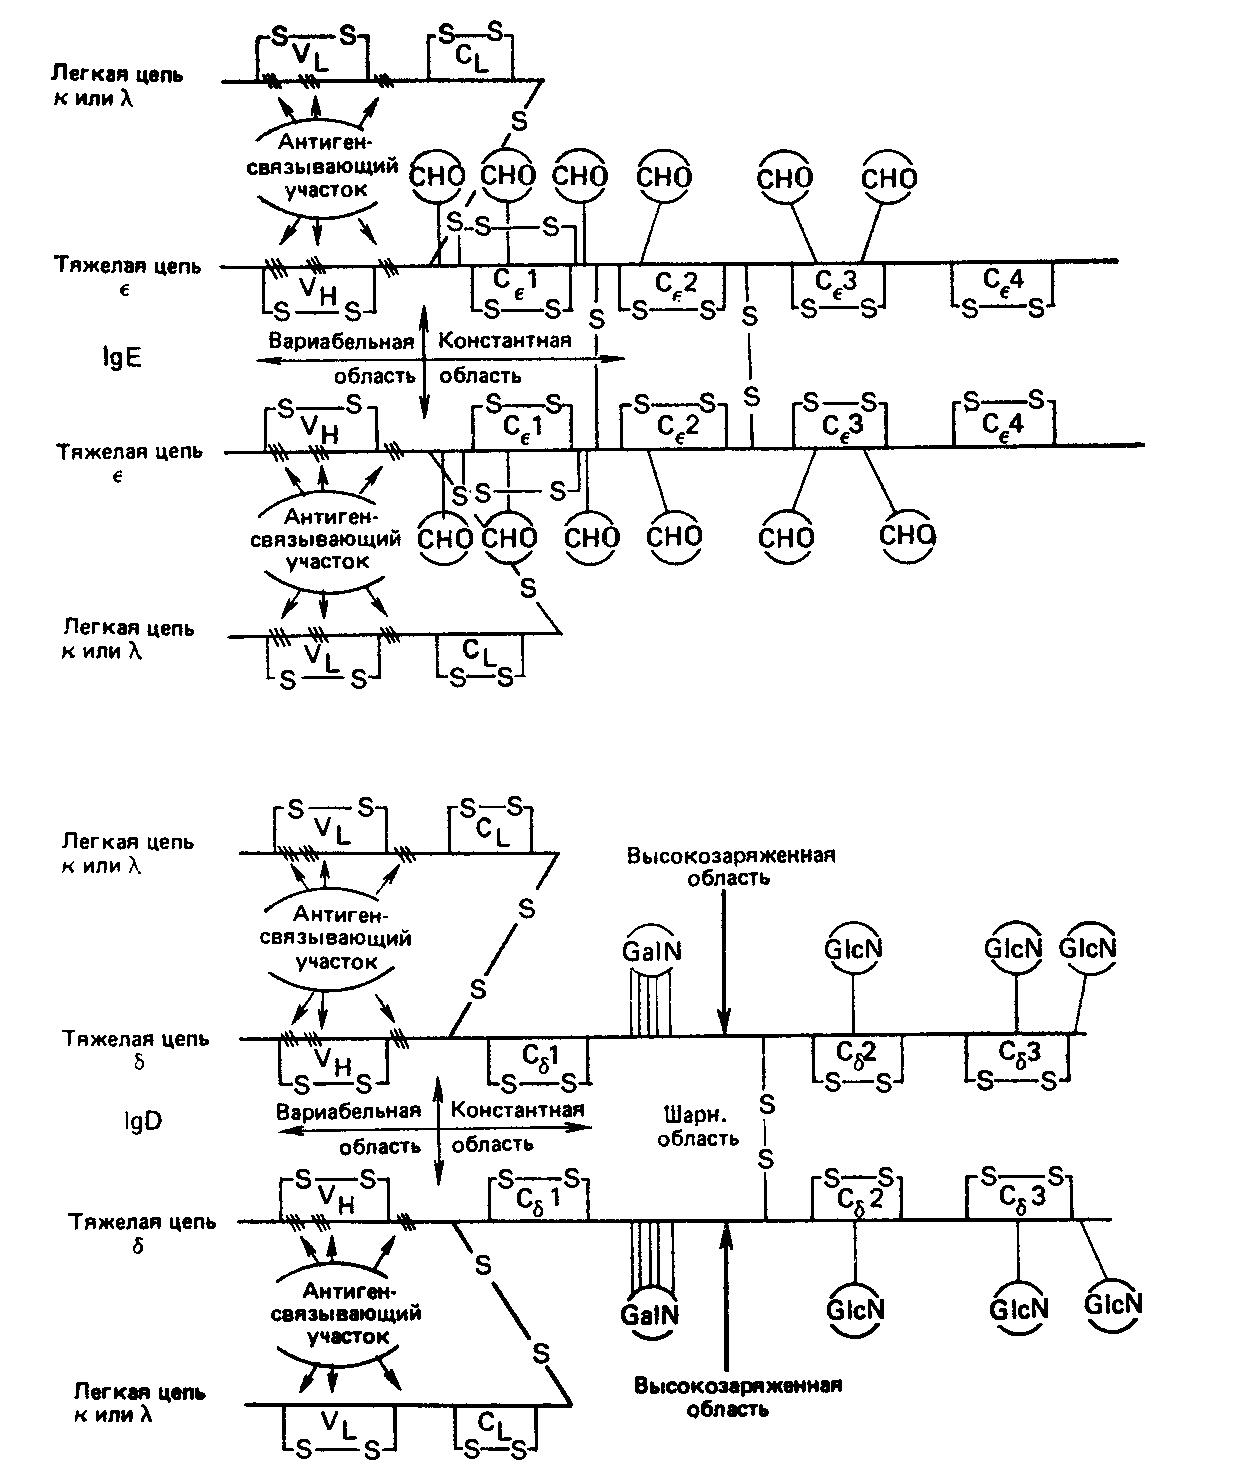 Схематическое изображение пяти классов иммуноглобулинов человека.